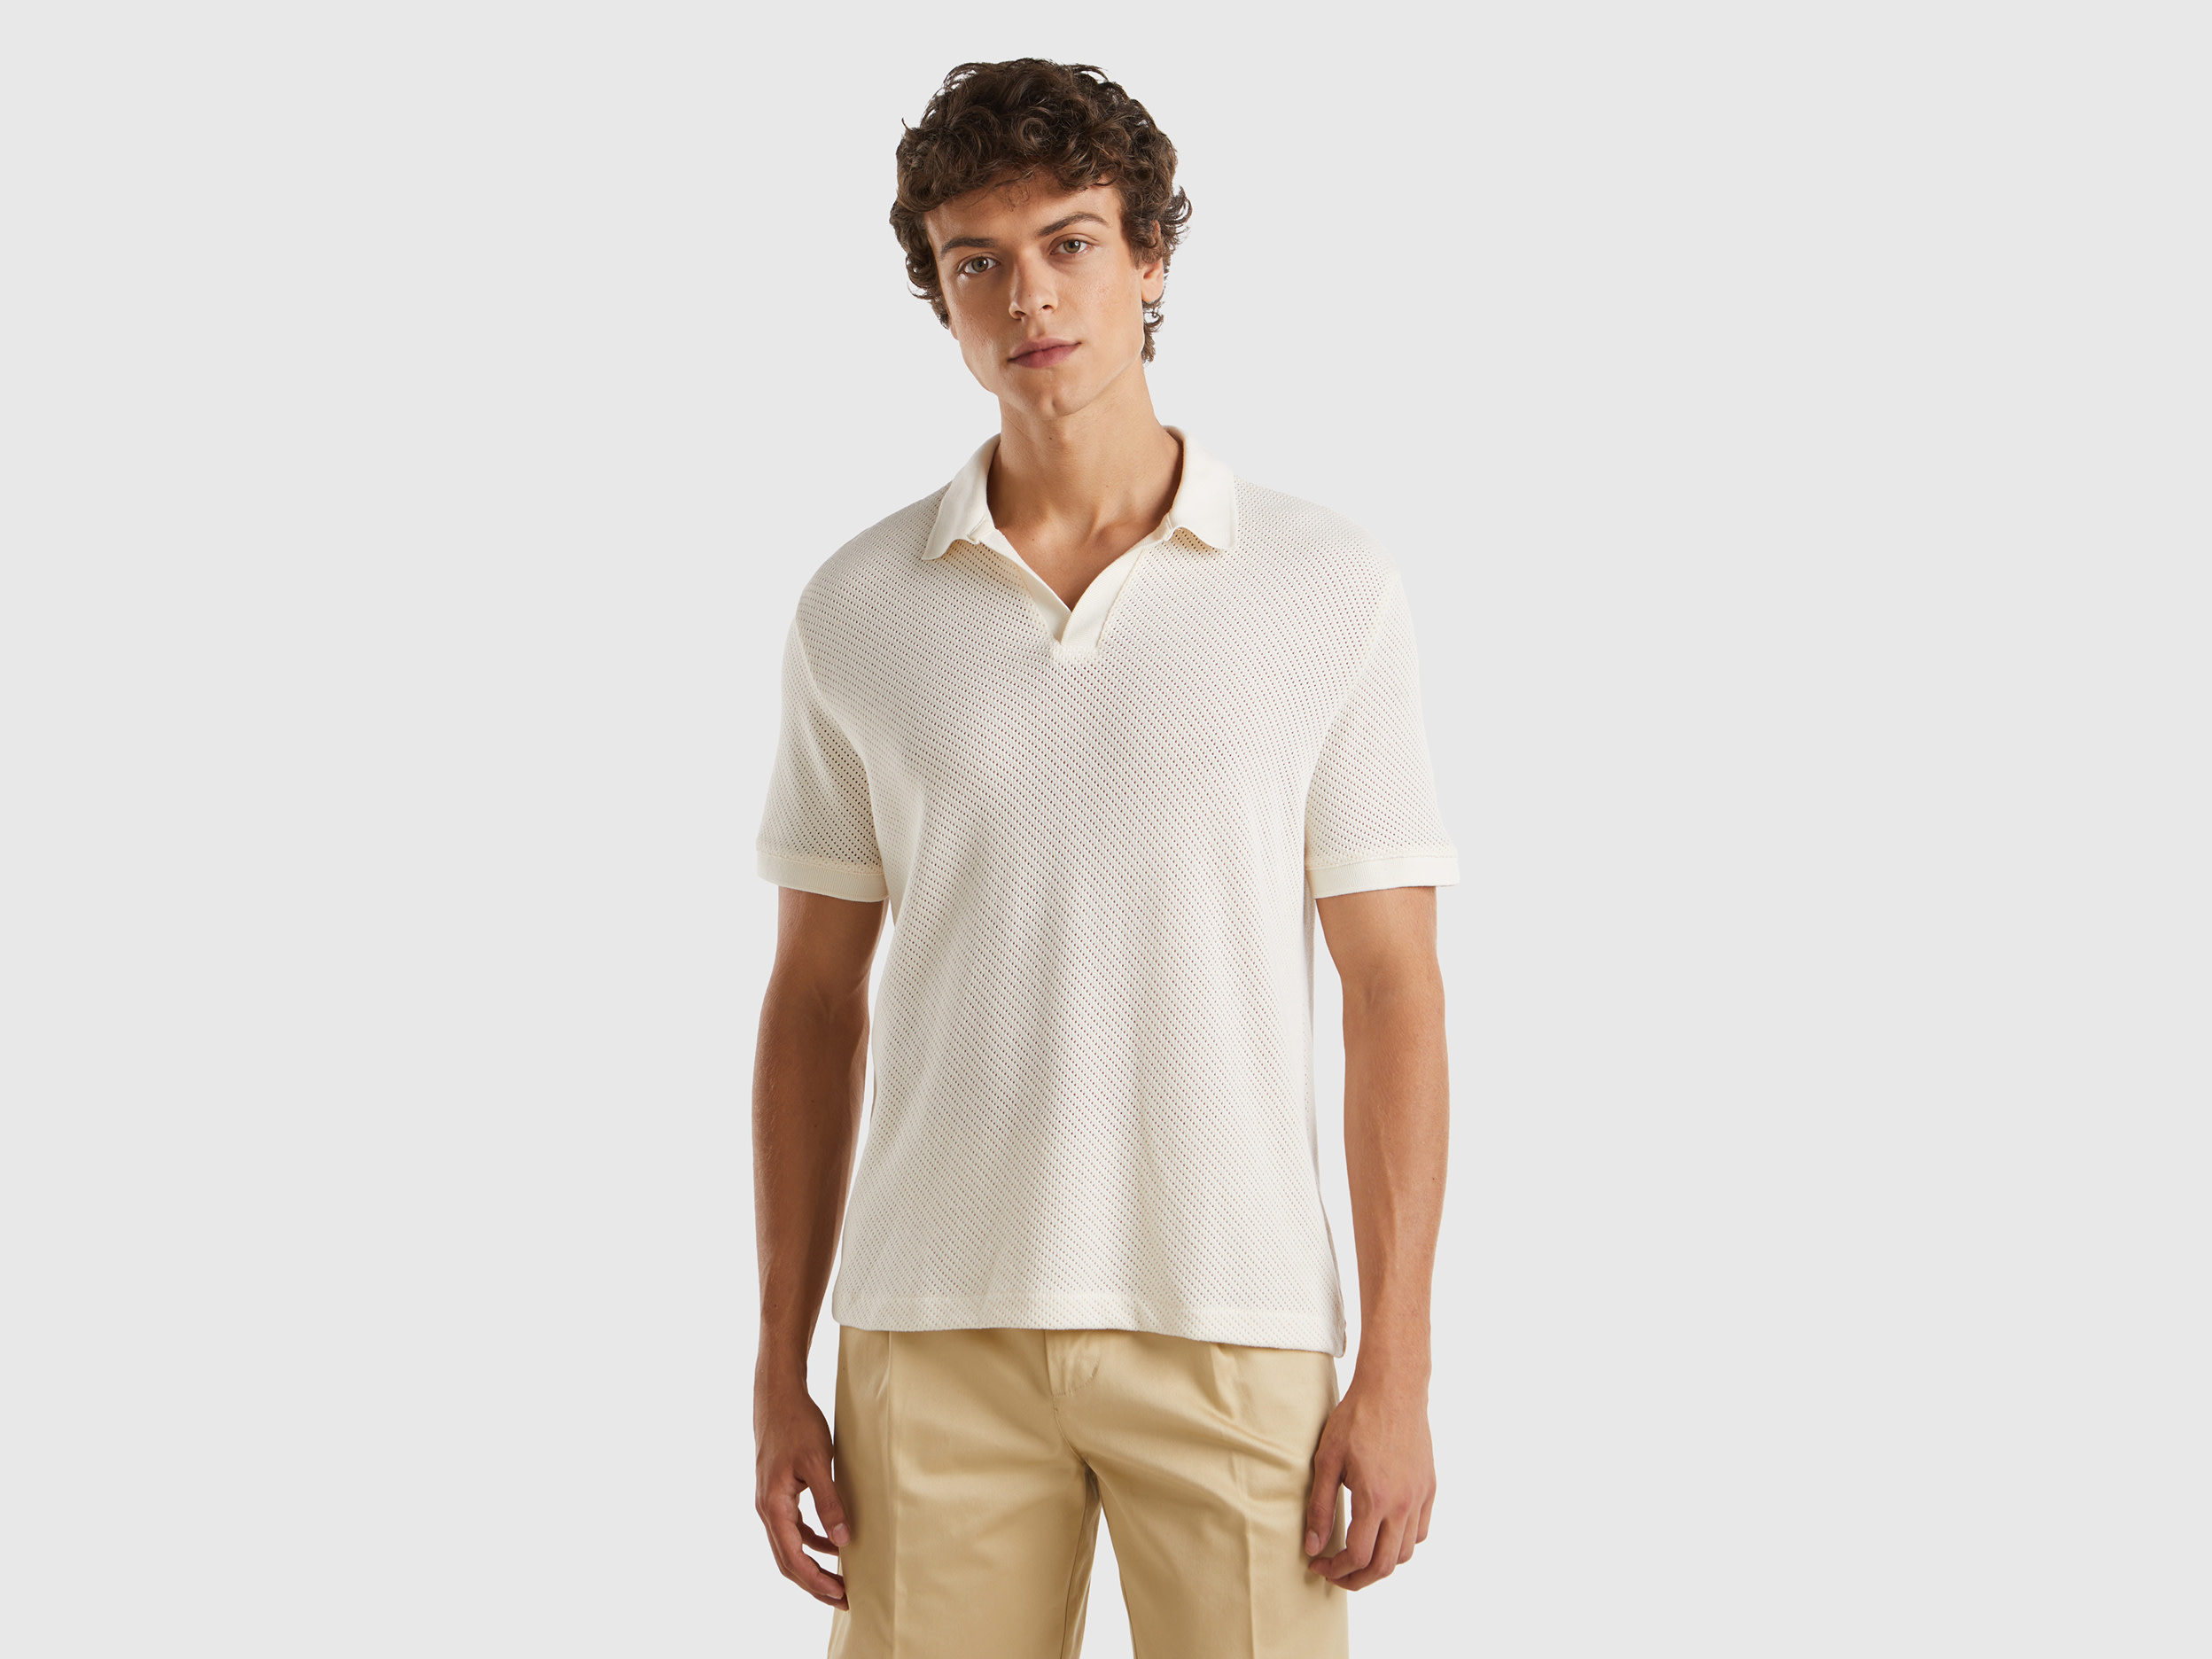 Image of Benetton, Perforated Cotton Polo Shirt, size XL, Creamy White, Men